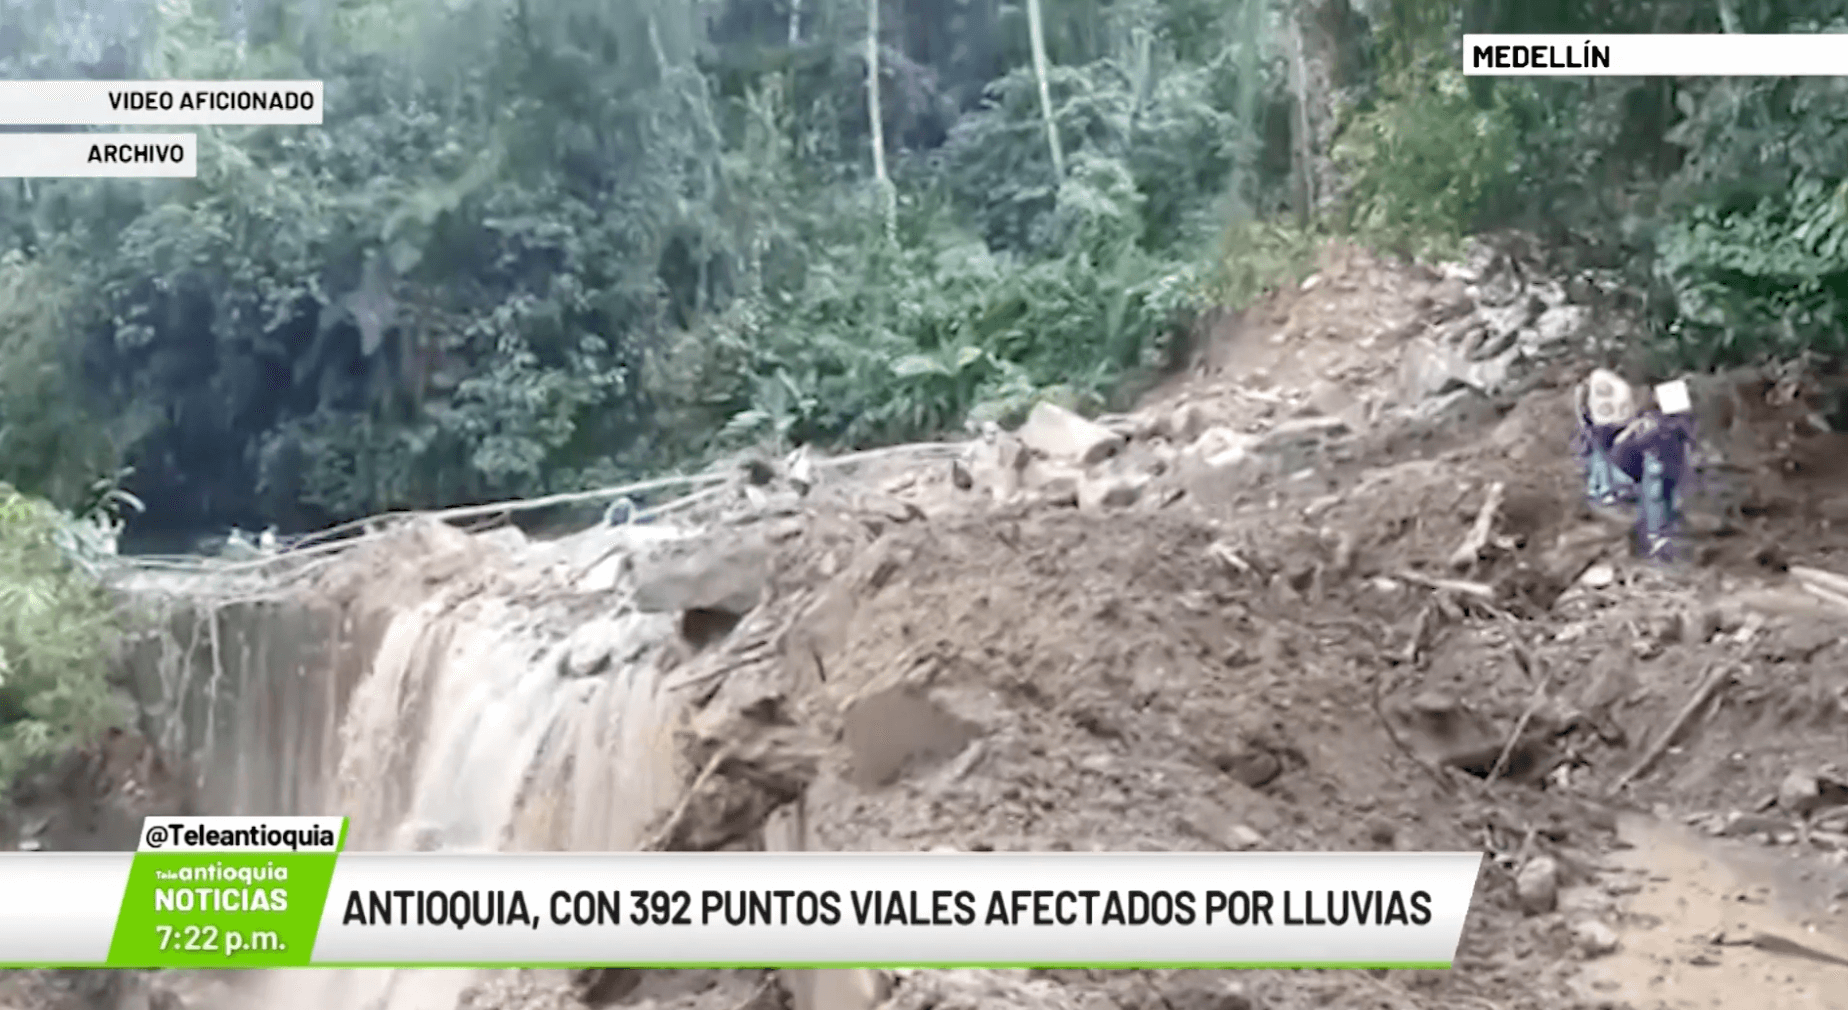 Antioquia, con 392 puntos viales afectados por lluvias